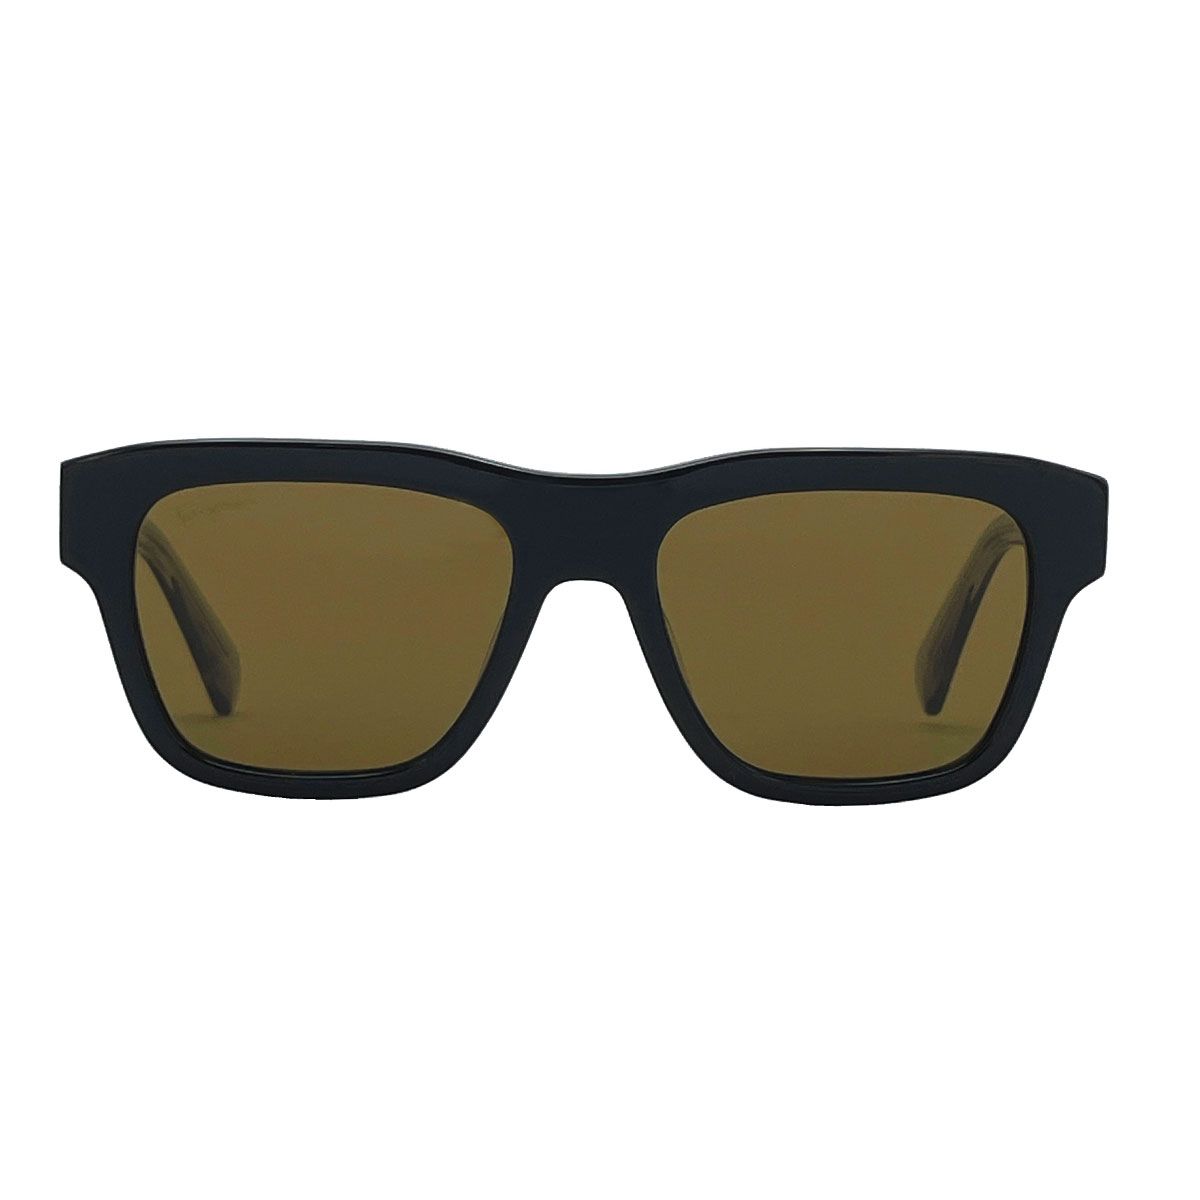 عینک آفتابی مردانه سالواتوره فراگامو مدل 51G087 - 746 -  - 1